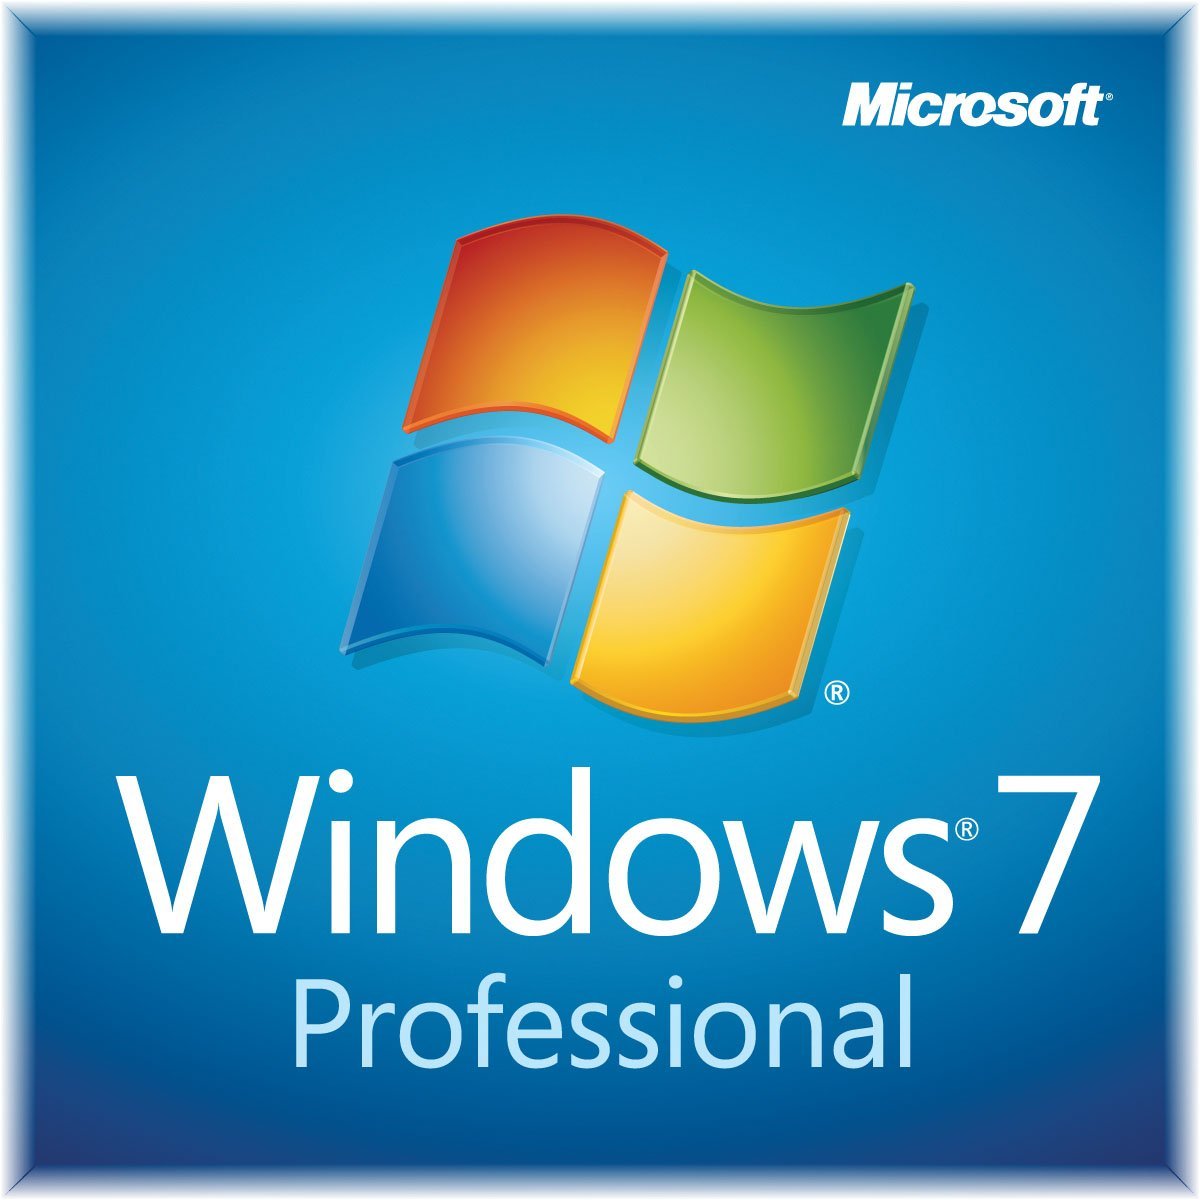 Windows 7 64 bit download free full version